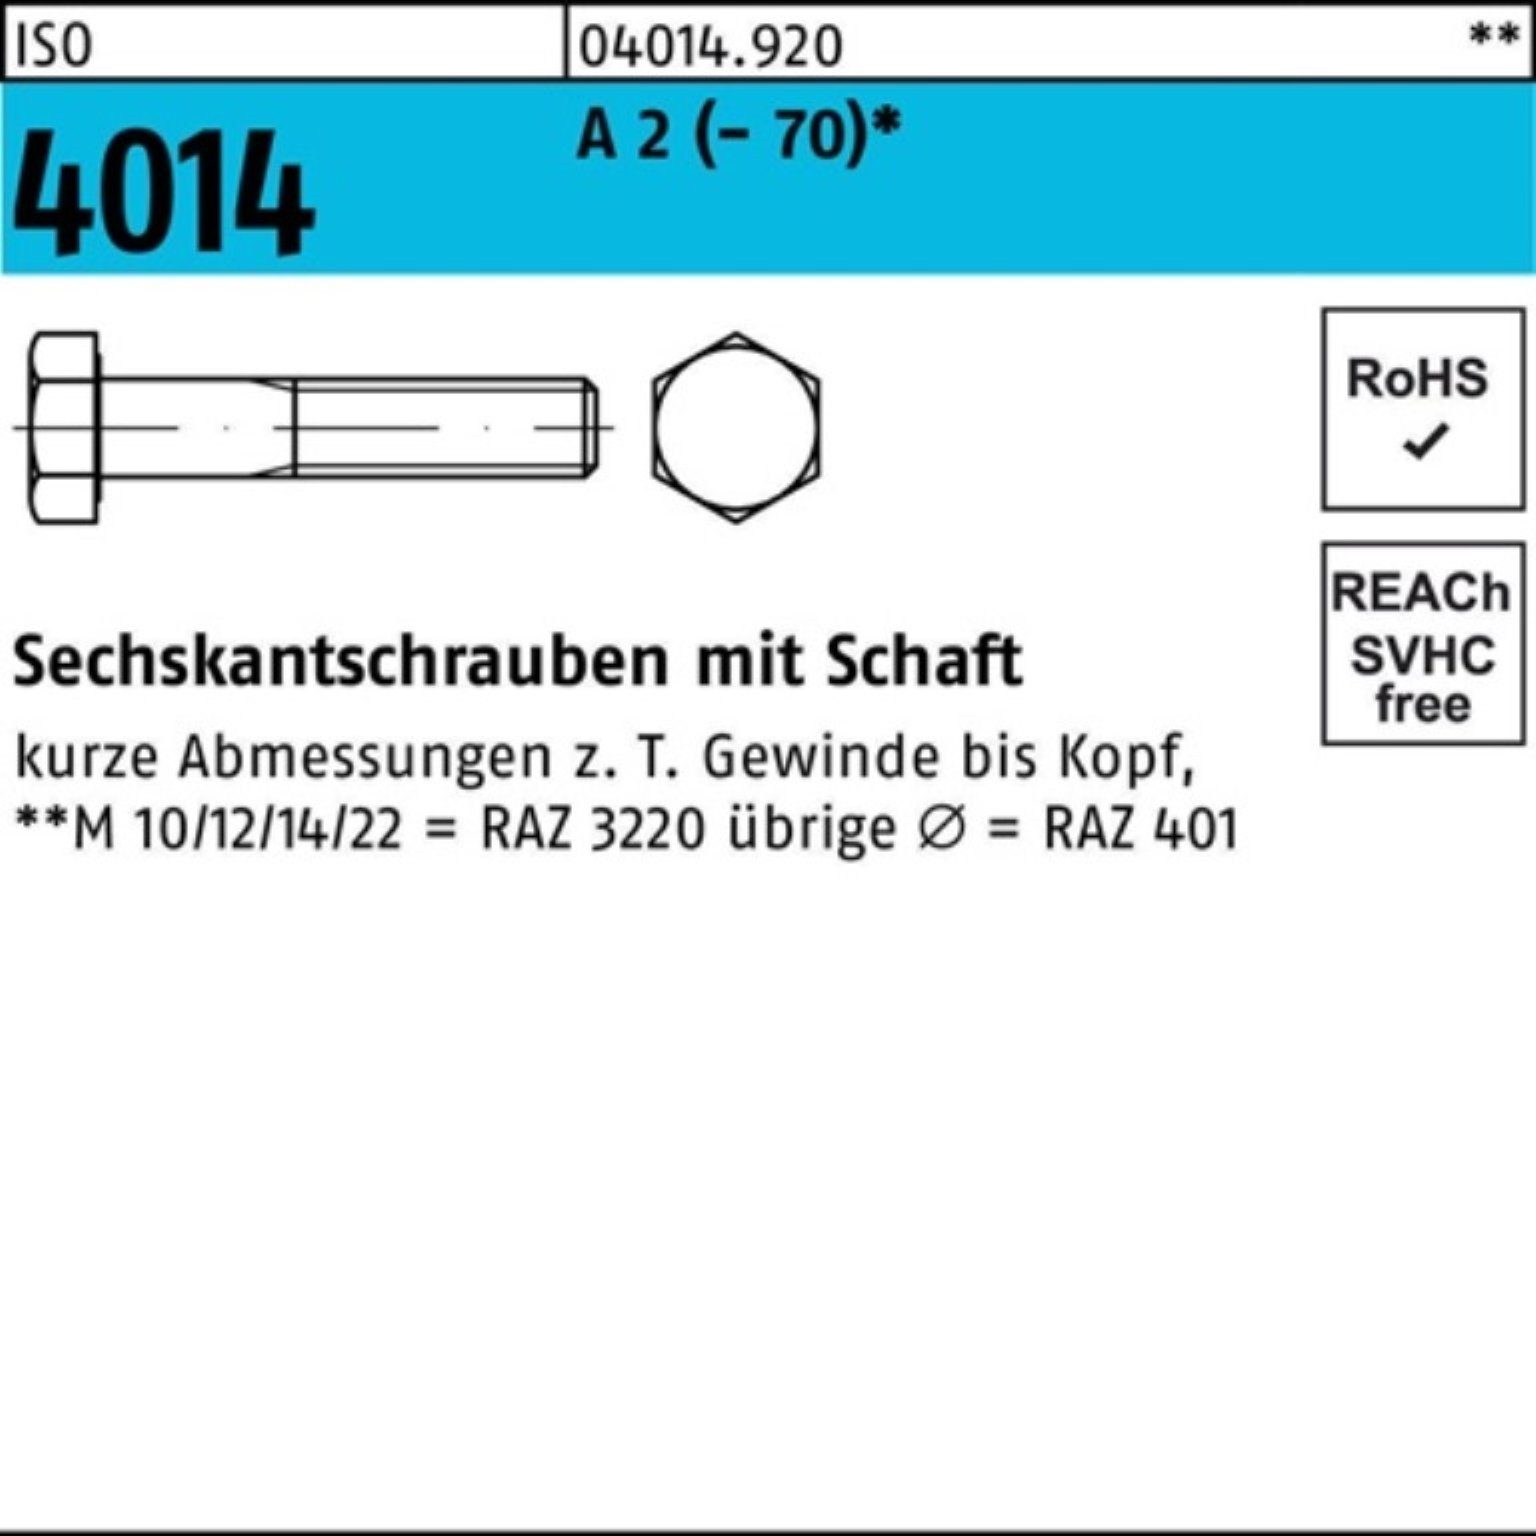 Bufab Sechskantschraube 100er Pack Sechskantschraube ISO 4014 Schaft M10x 150 A 2 (70) 50 St